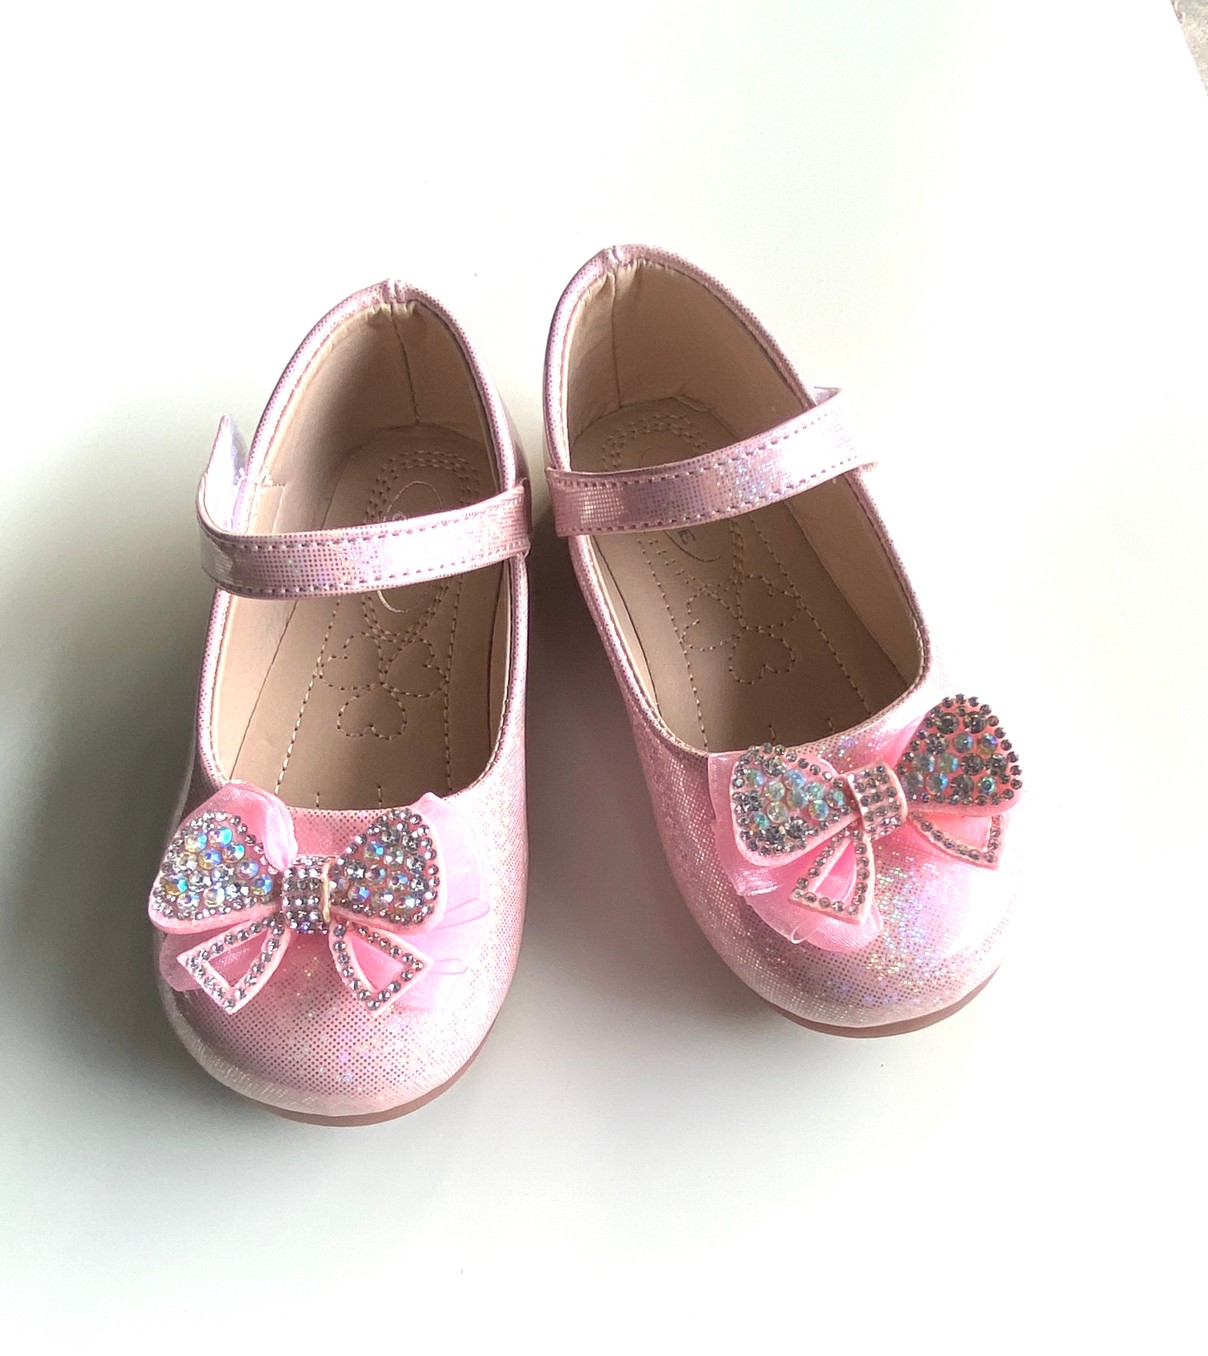 9022 รองเท้าคัทชูเด็กหญิงหนังเงา ประดับโบว์เพชร  ไซส์ 21-30 มี2สี ขาว ชมพู